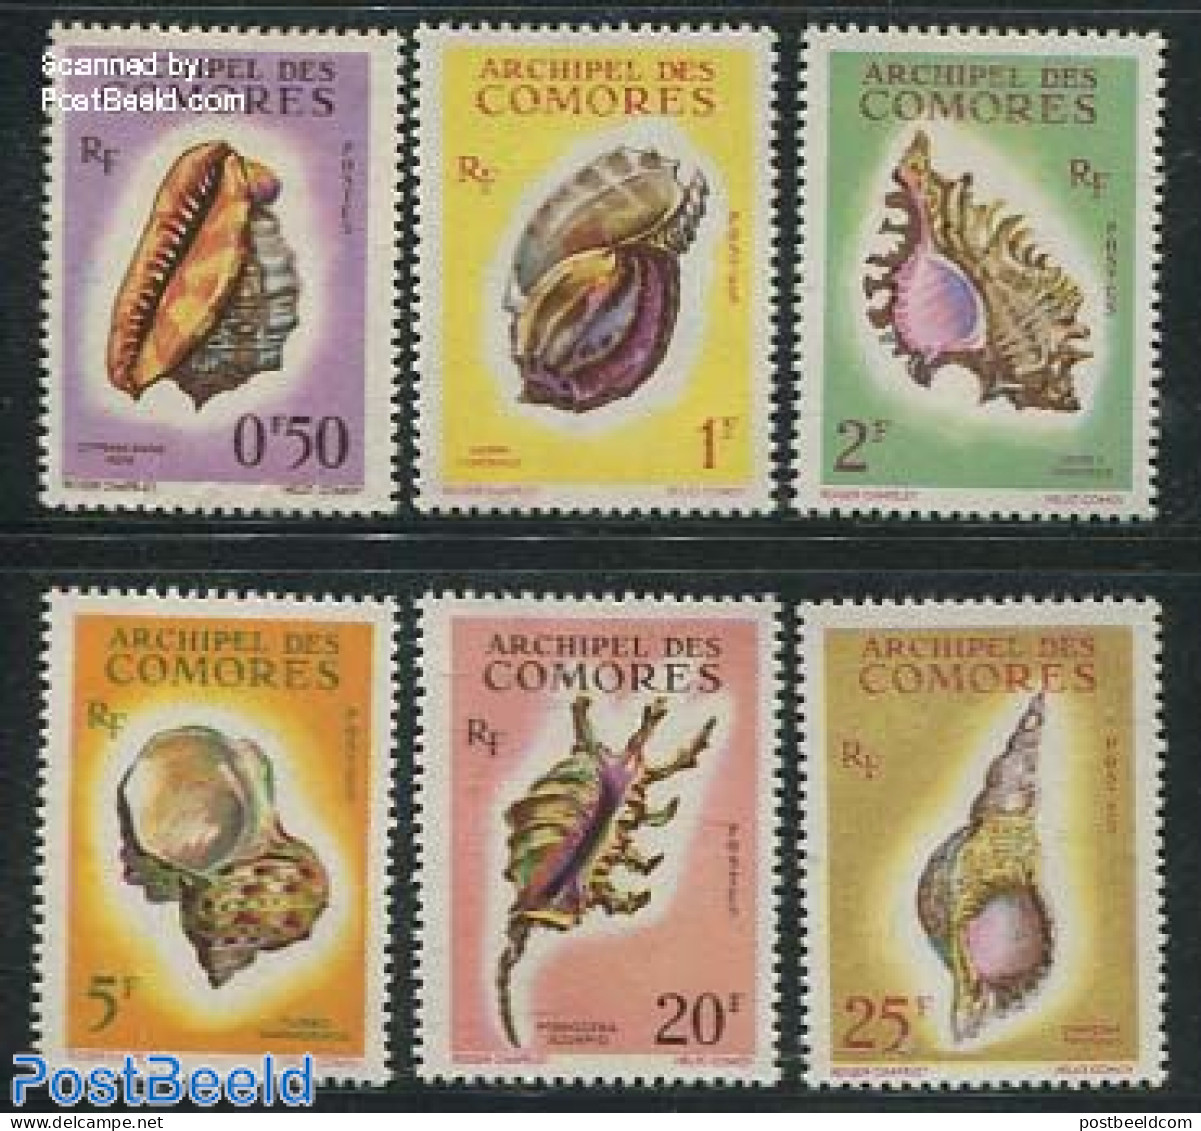 Comoros 1962 Shells 6v, Mint NH, Nature - Shells & Crustaceans - Vie Marine